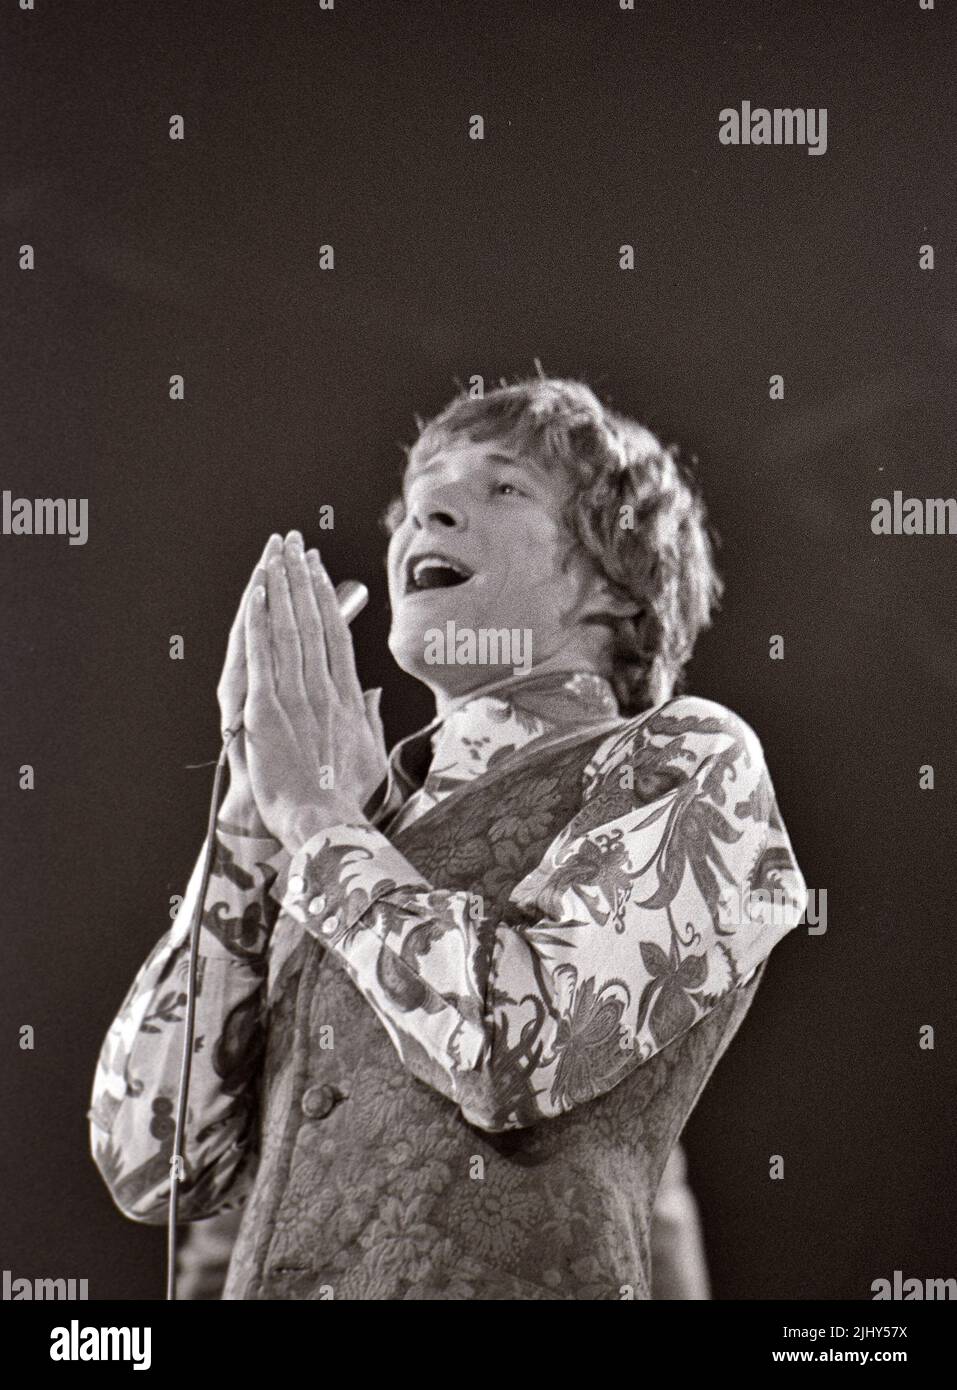 PAUL JONES cantante pop británico en 1966 Foto de stock